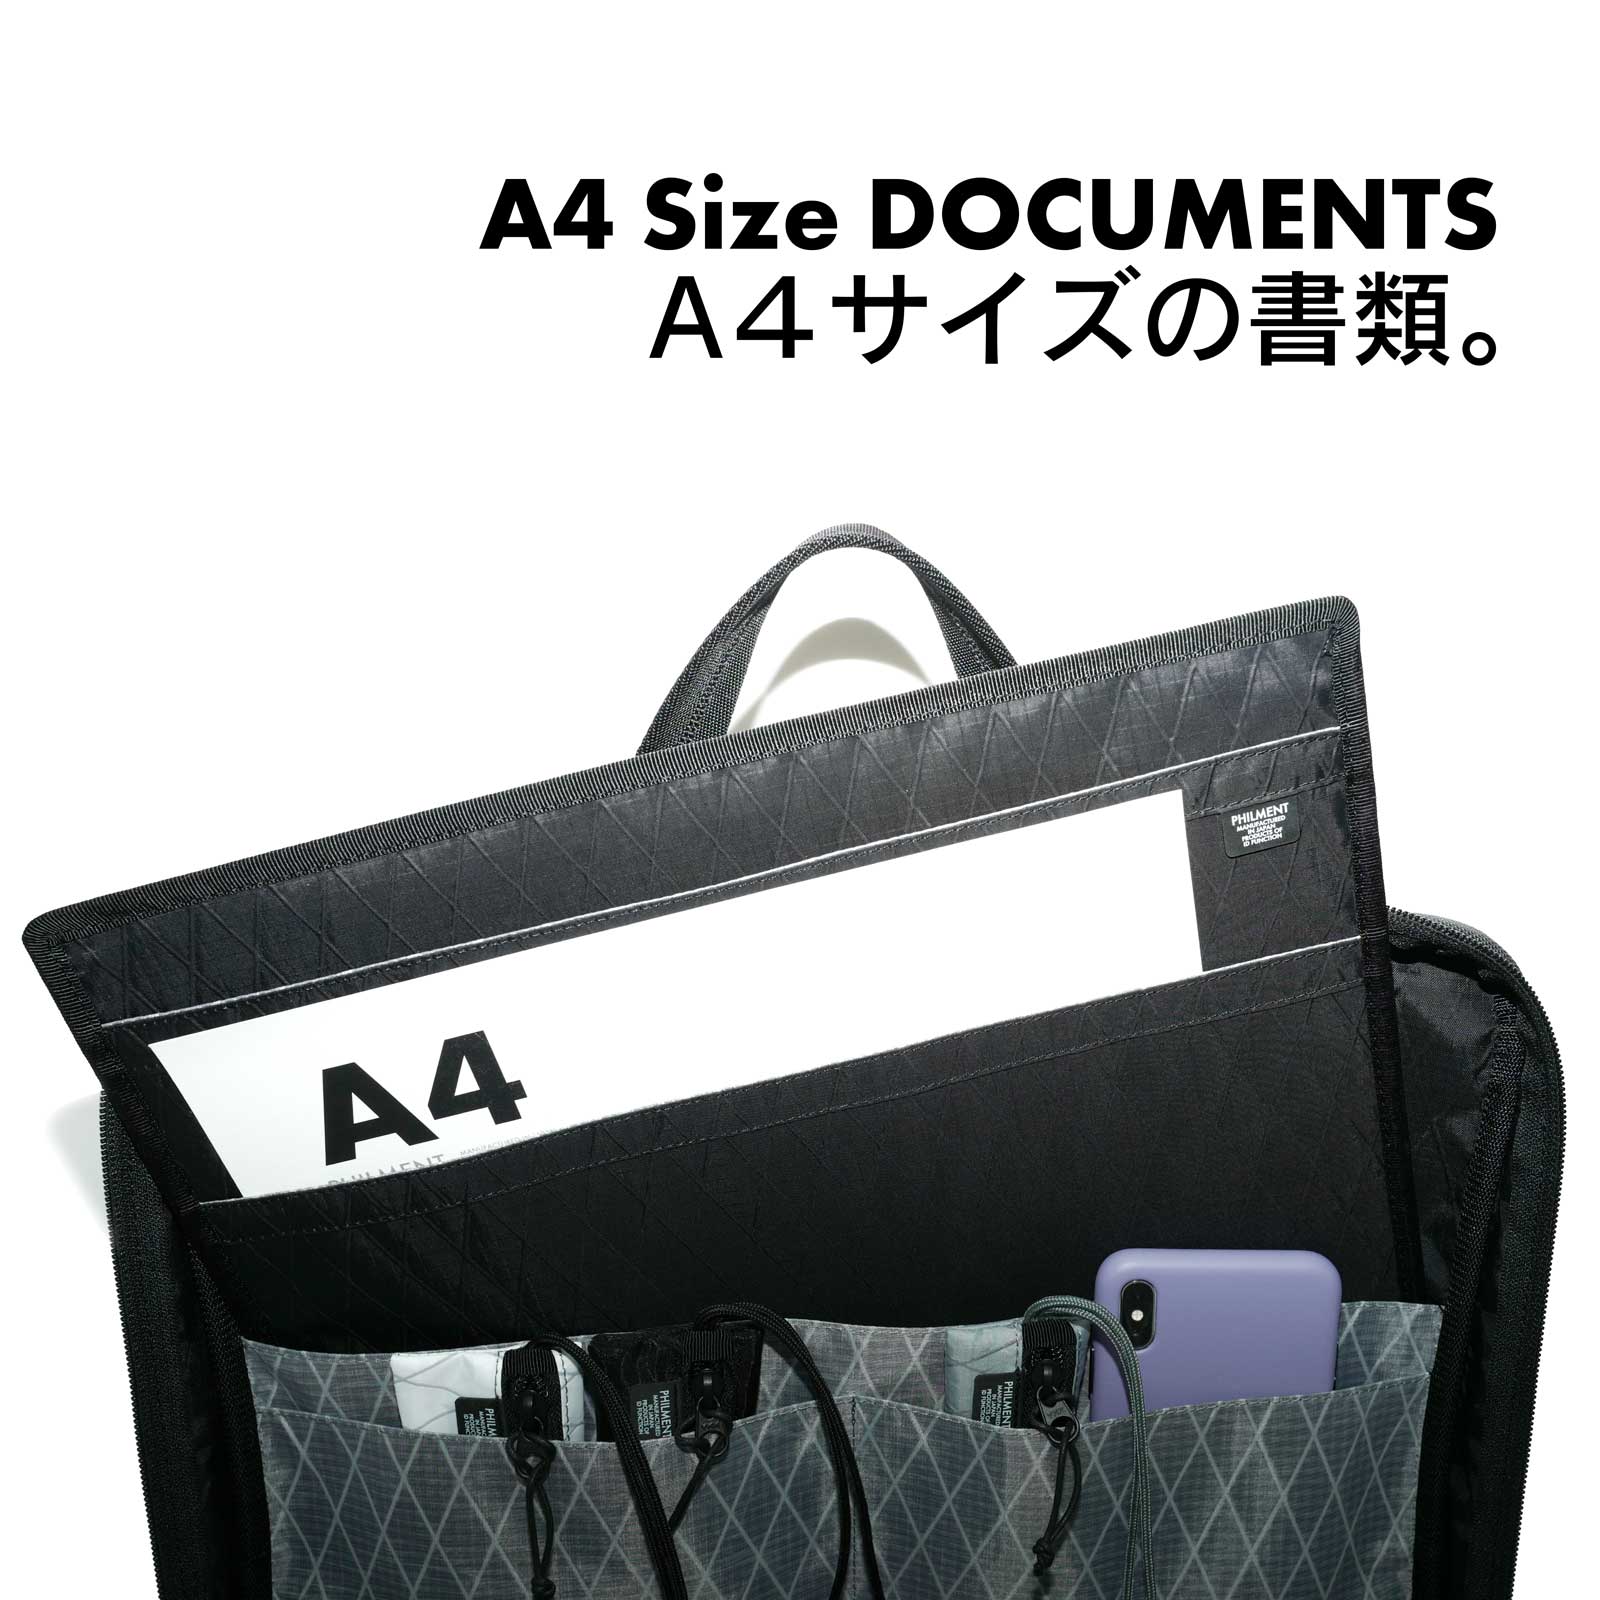 A4サイズの書類の収納に最適なスリーブが付属したB4ビジネスバッグ